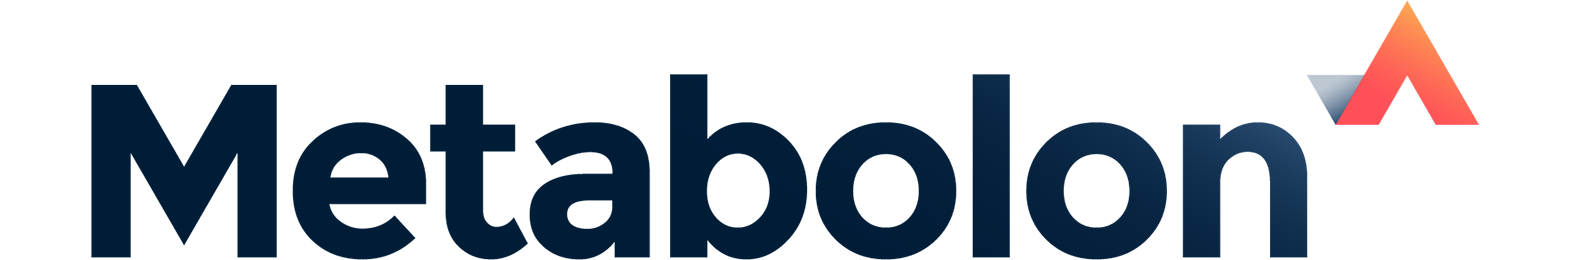 Logo and link to metabolon.com